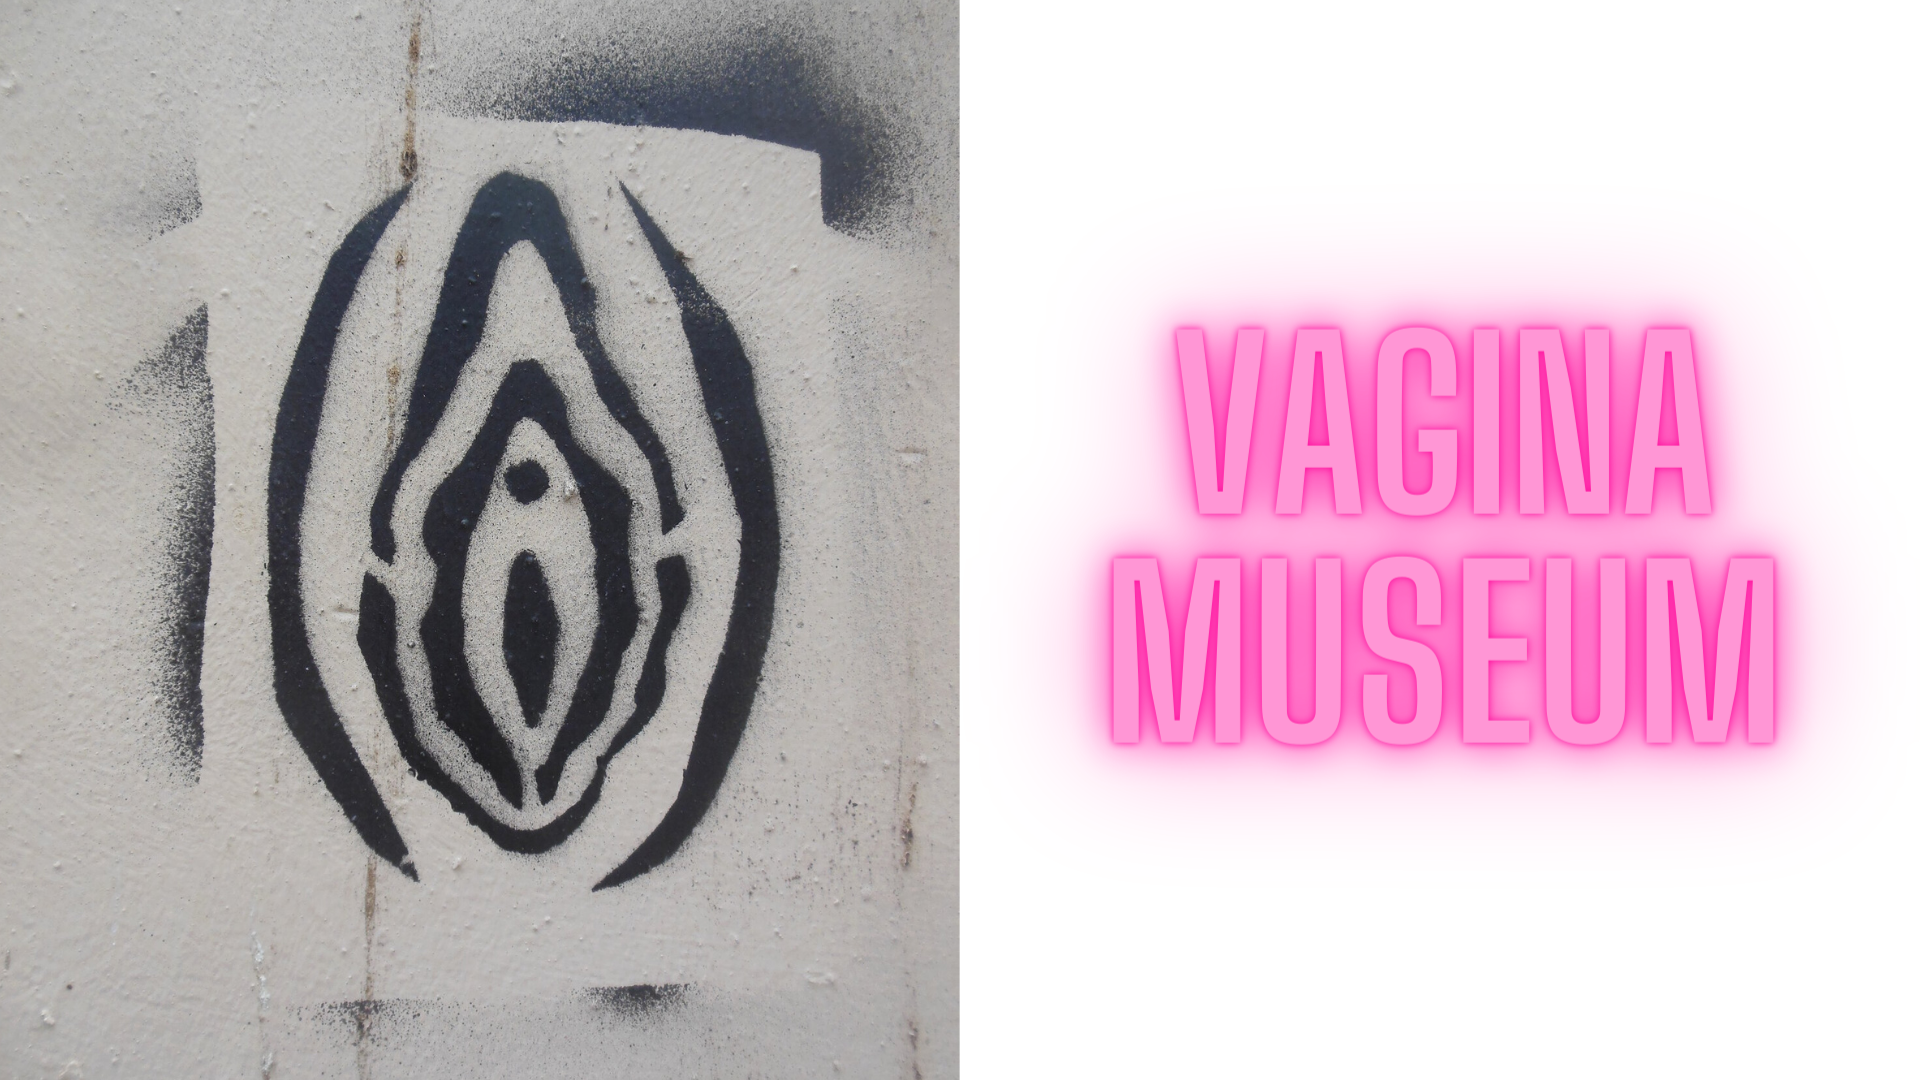 Vagina Museum